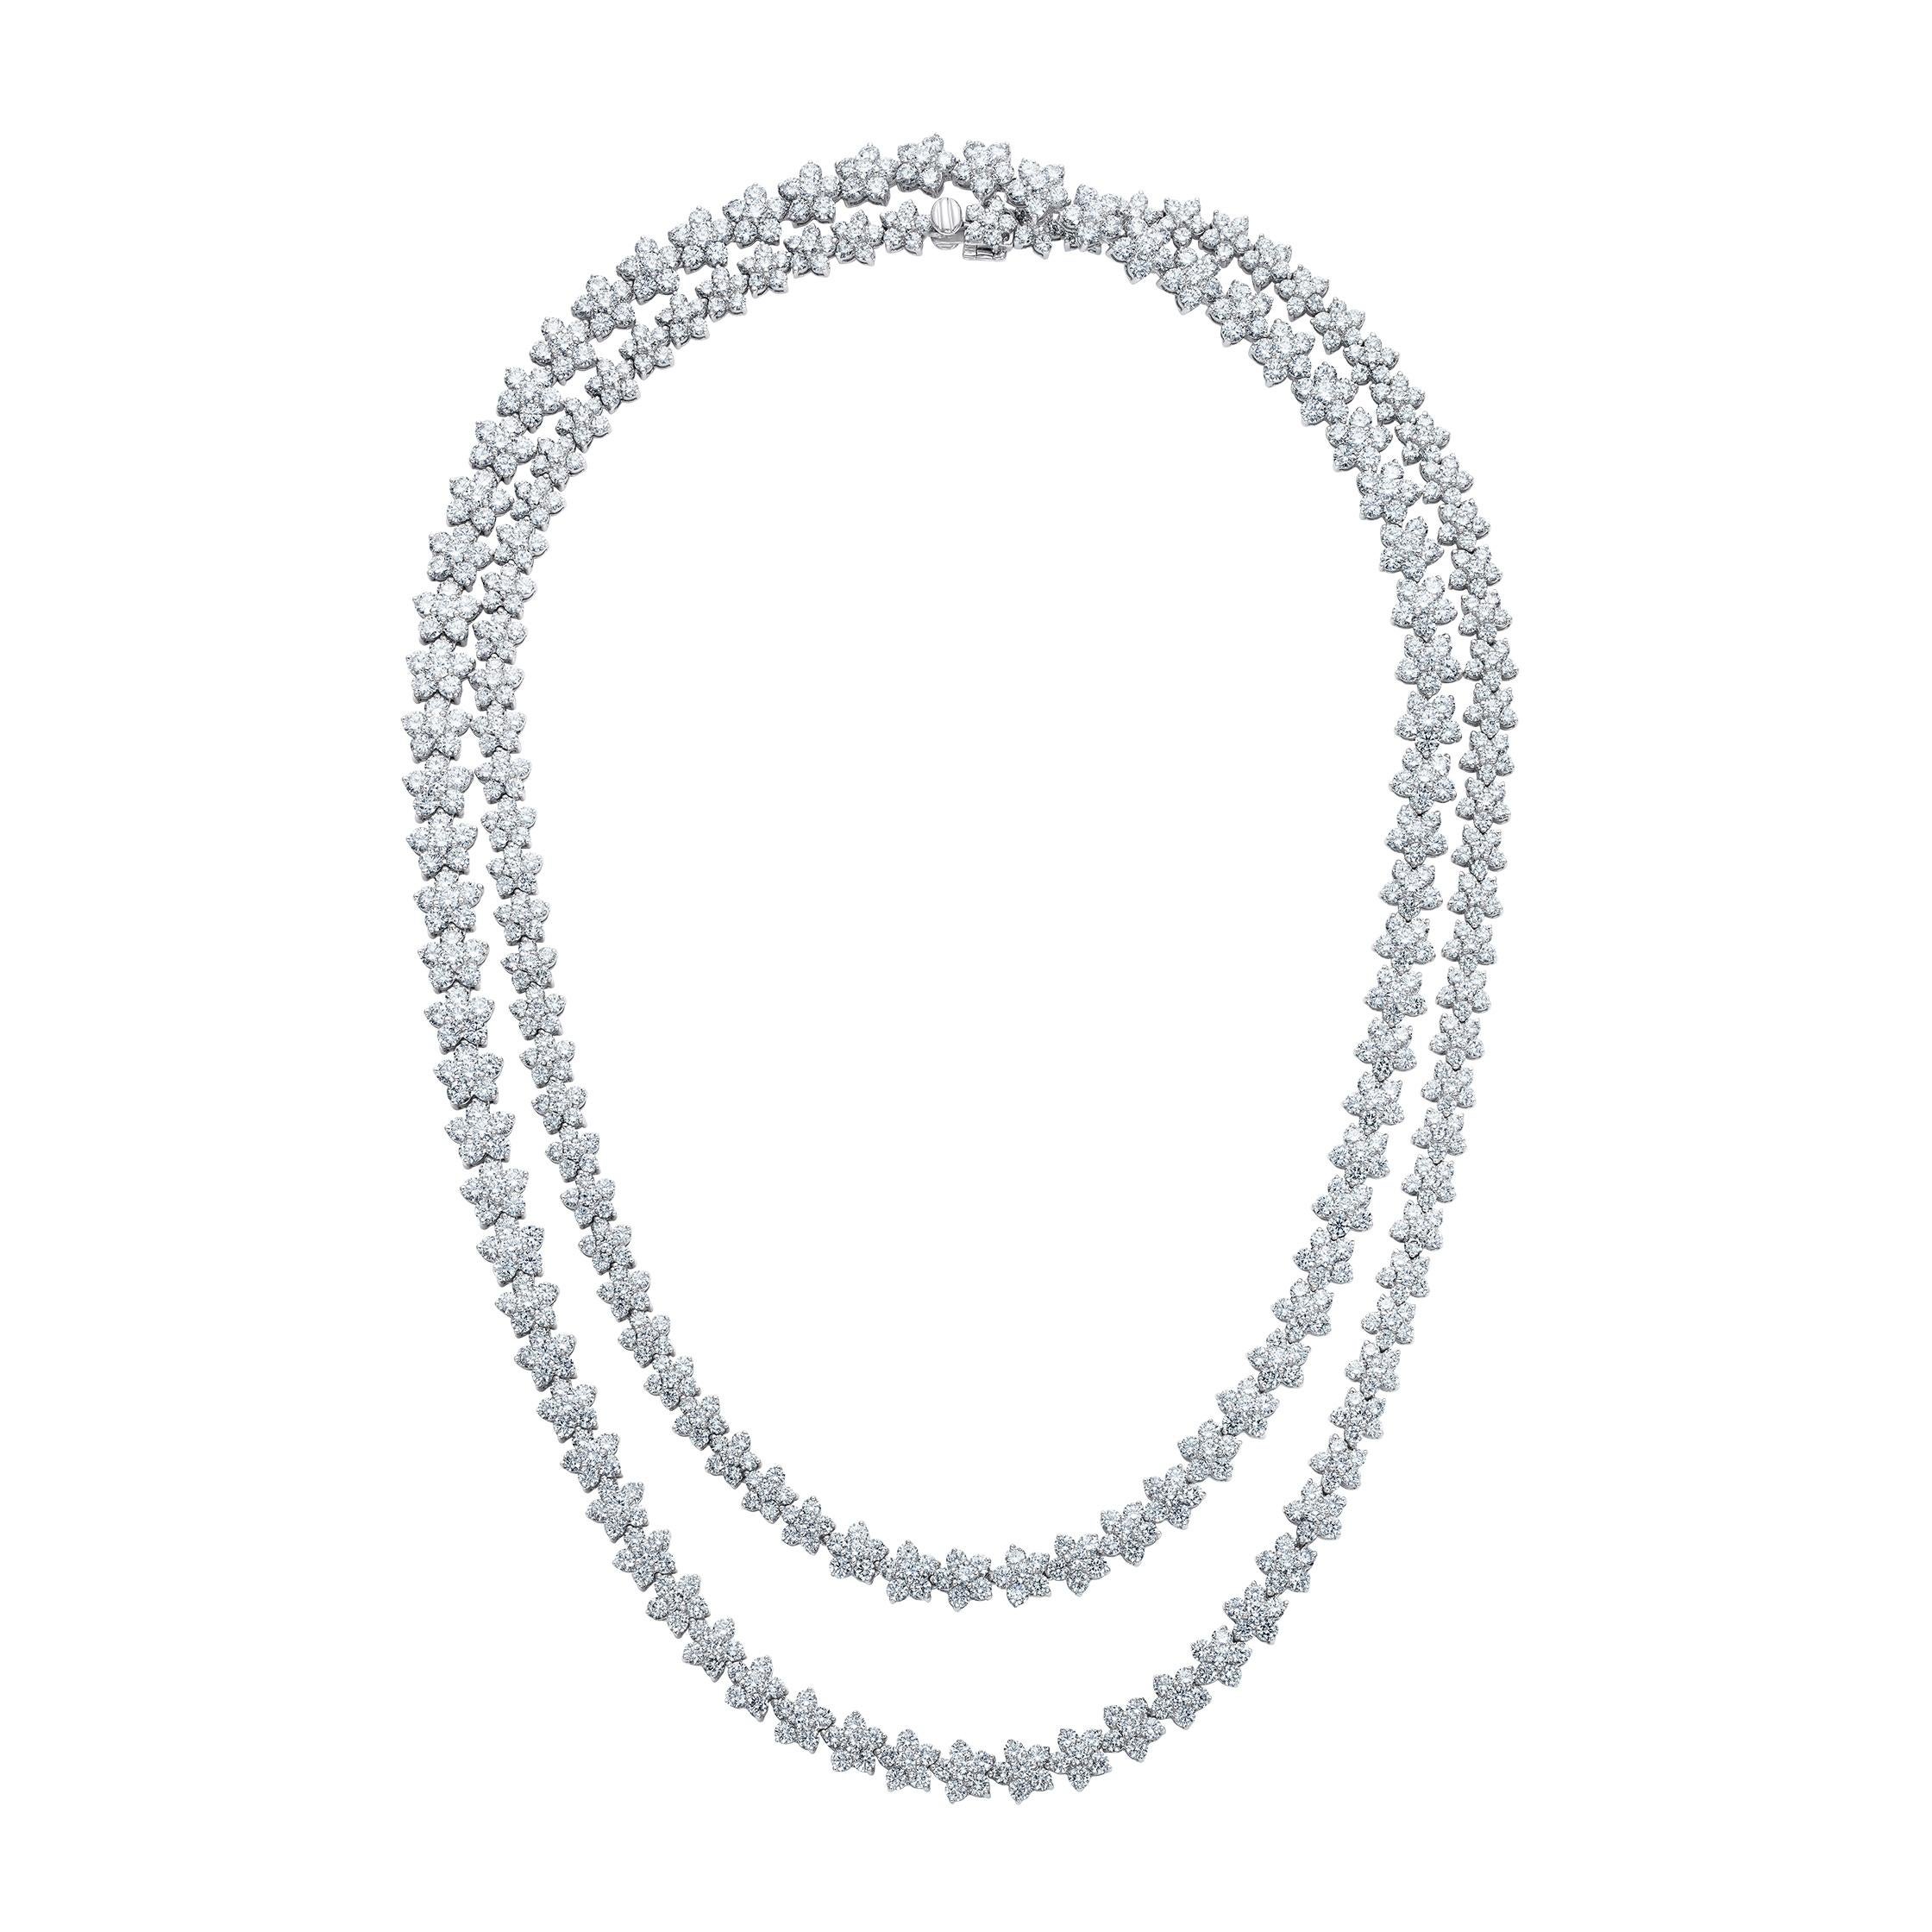 Eine atemberaubende, schimmernde Halskette in Opernlänge mit einer Gesamtlänge von 37 Zoll, die aus hübschen, gänseblümchenartigen Clustern von Diamanten in Collection-Qualität besteht.

- 888 weiße Diamanten von insgesamt 37,30 Karat
- Hergestellt